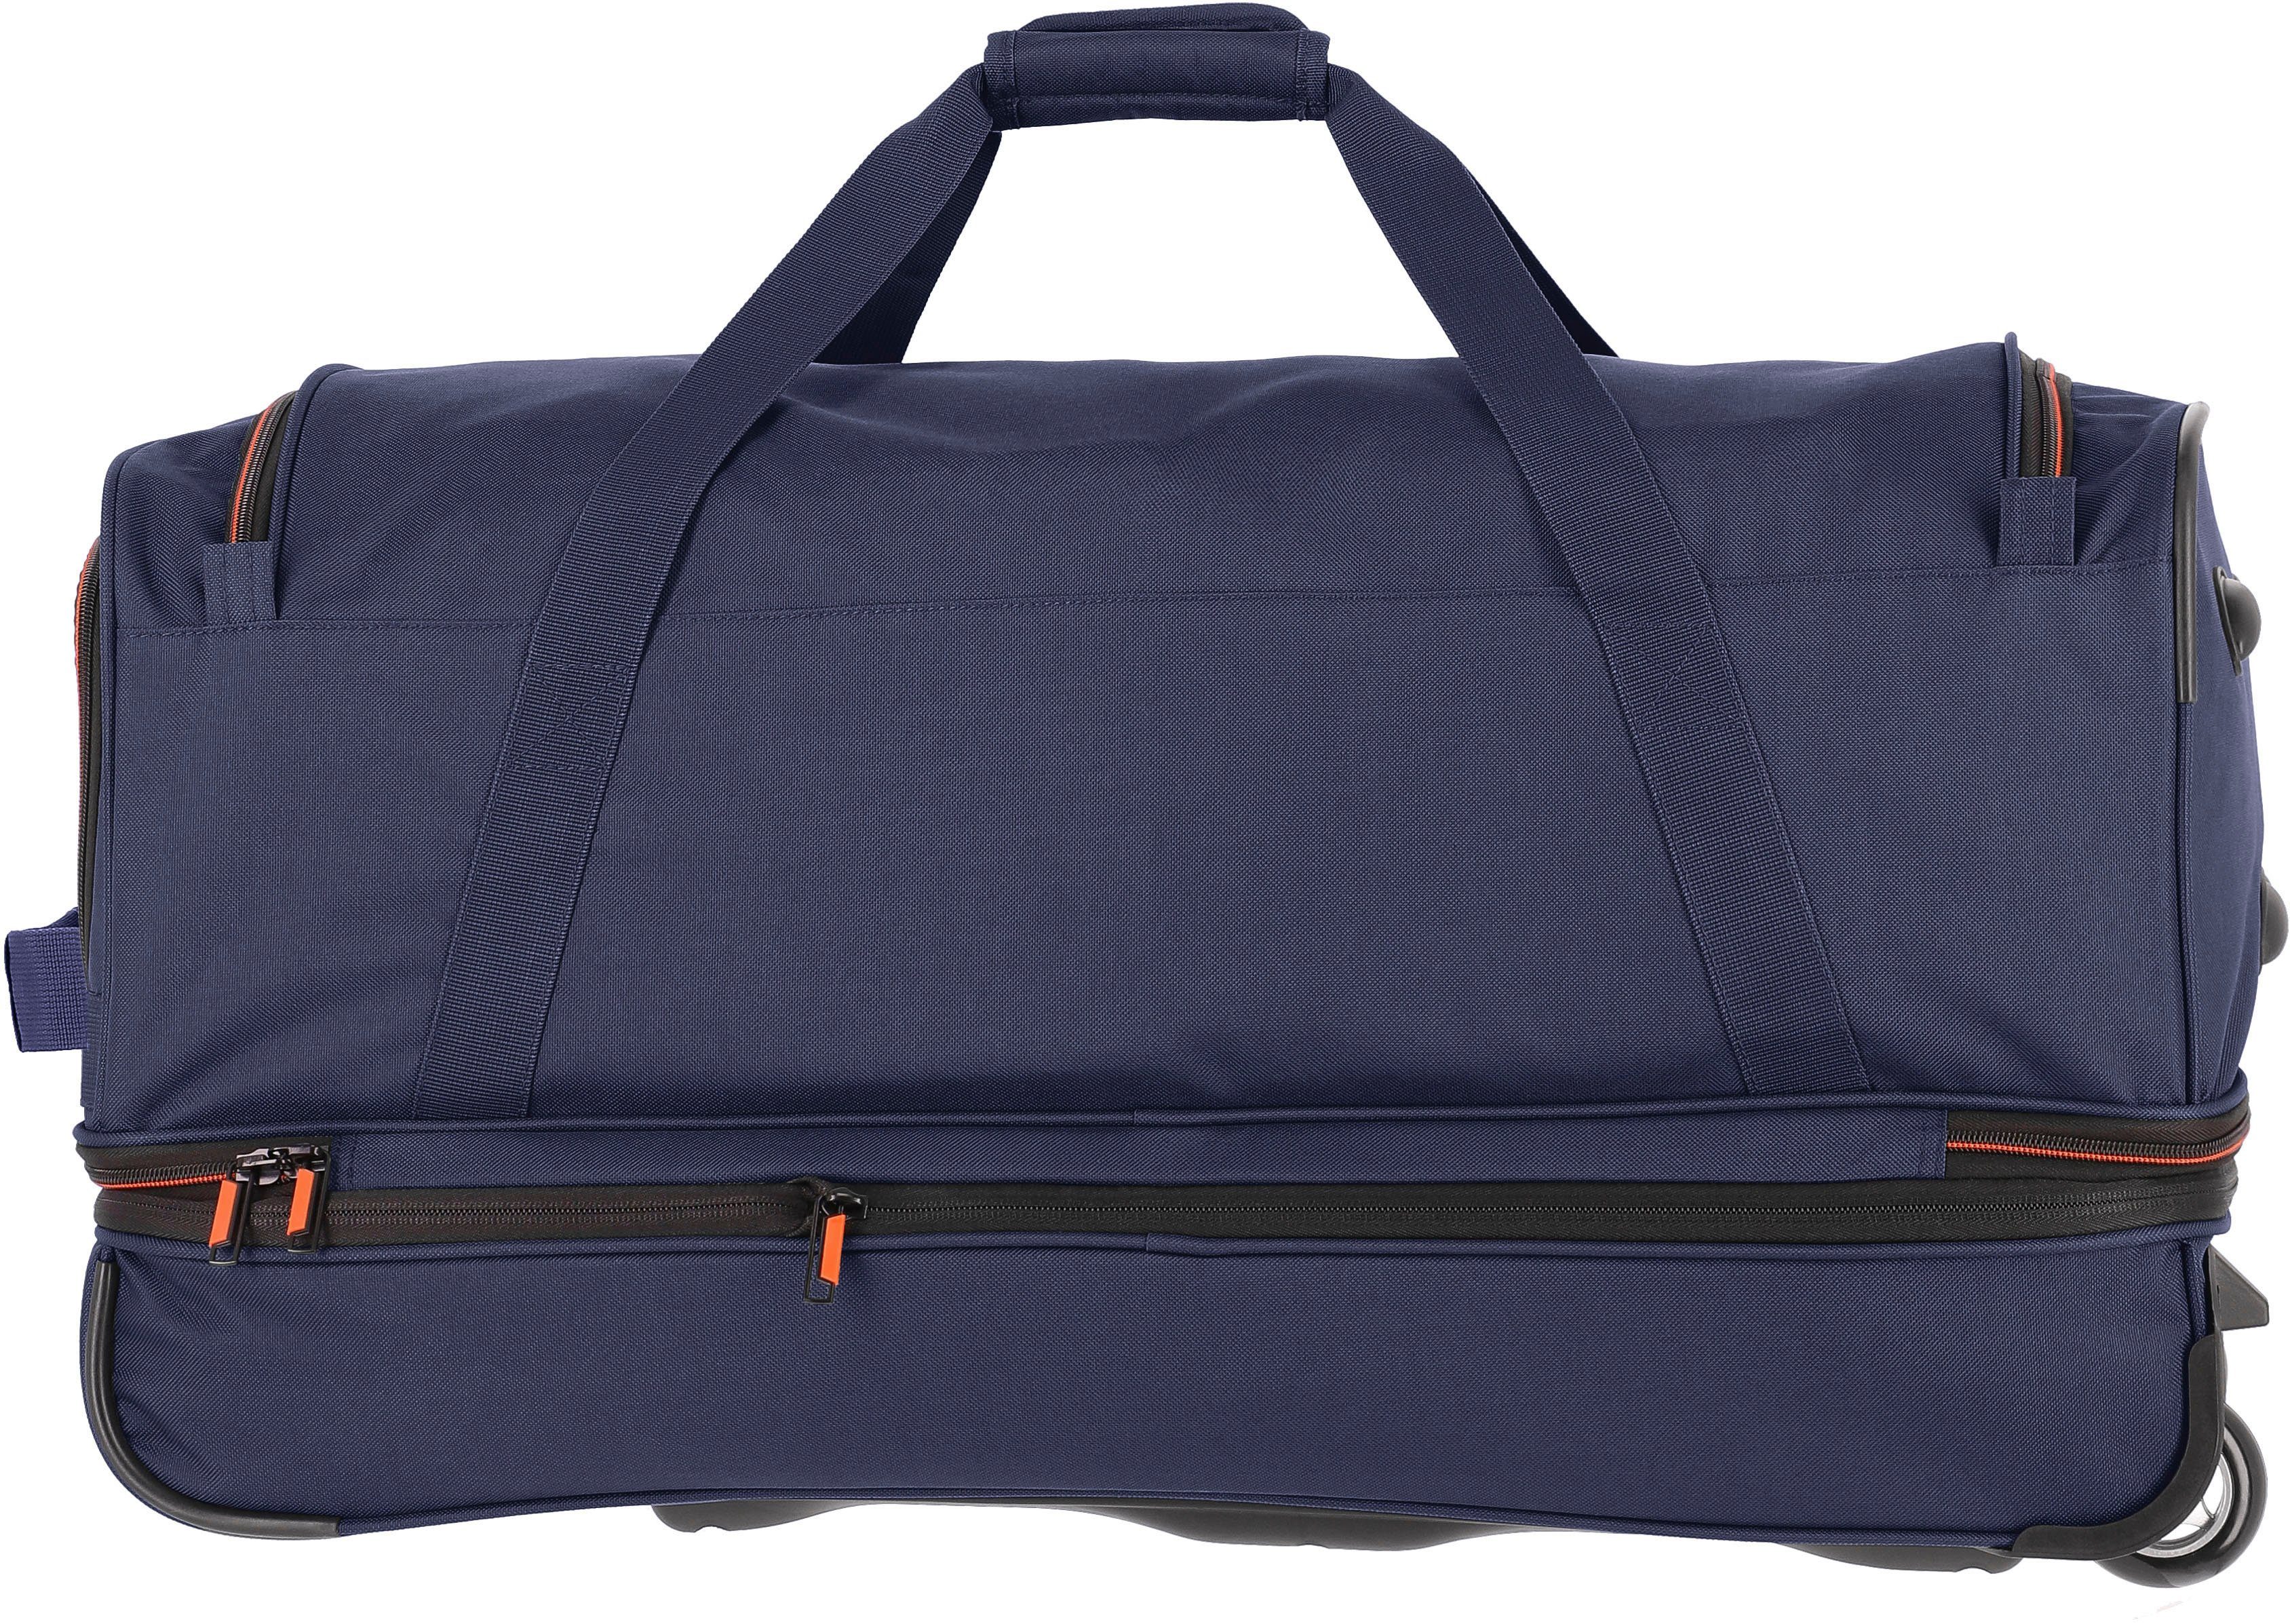 und Basics, marine-orange 70 Volumenerweiterung cm, mit Trolleyfunktion travelite Reisetasche